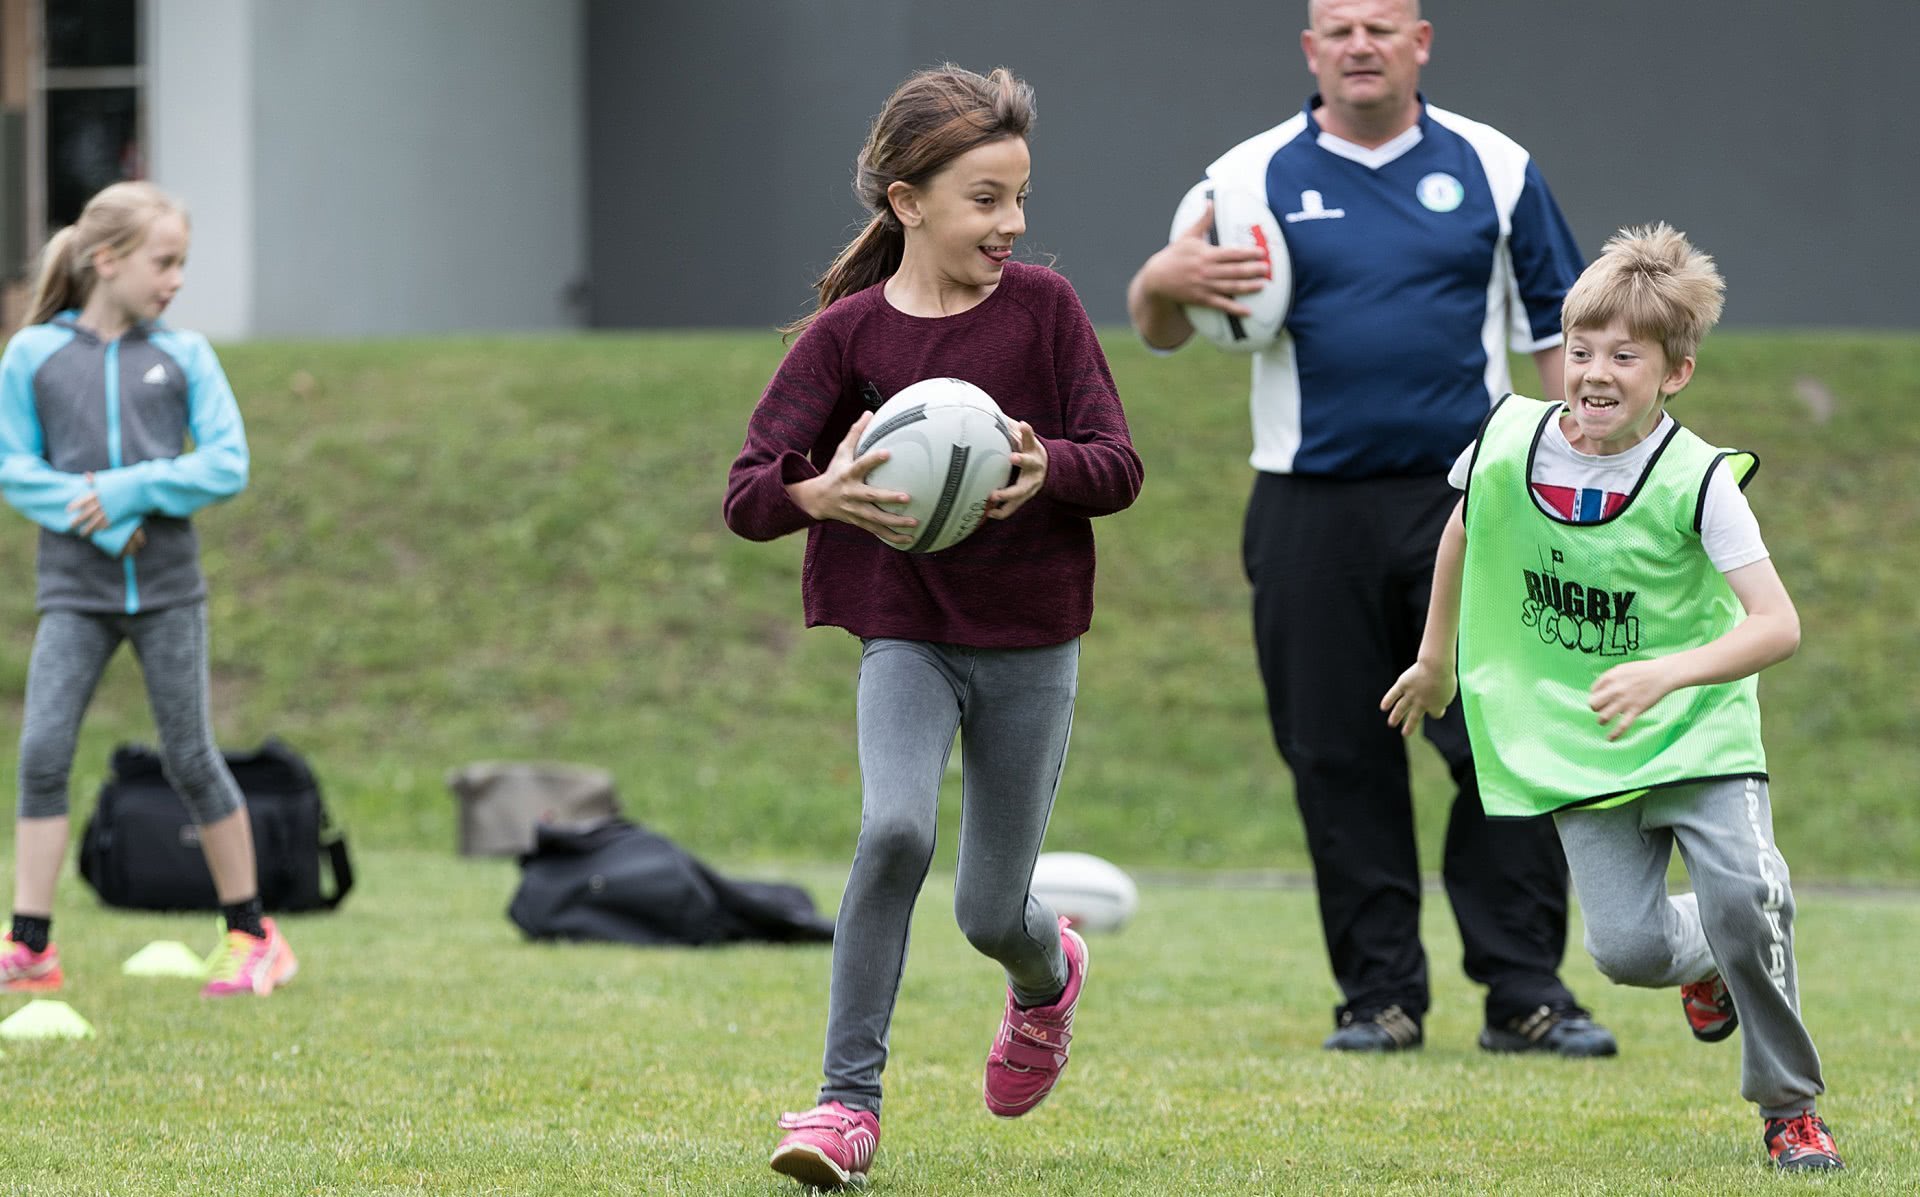 Photo: Poursuivie par un garçon, une jeune fille tient un ballon de rugby entre ses mains.